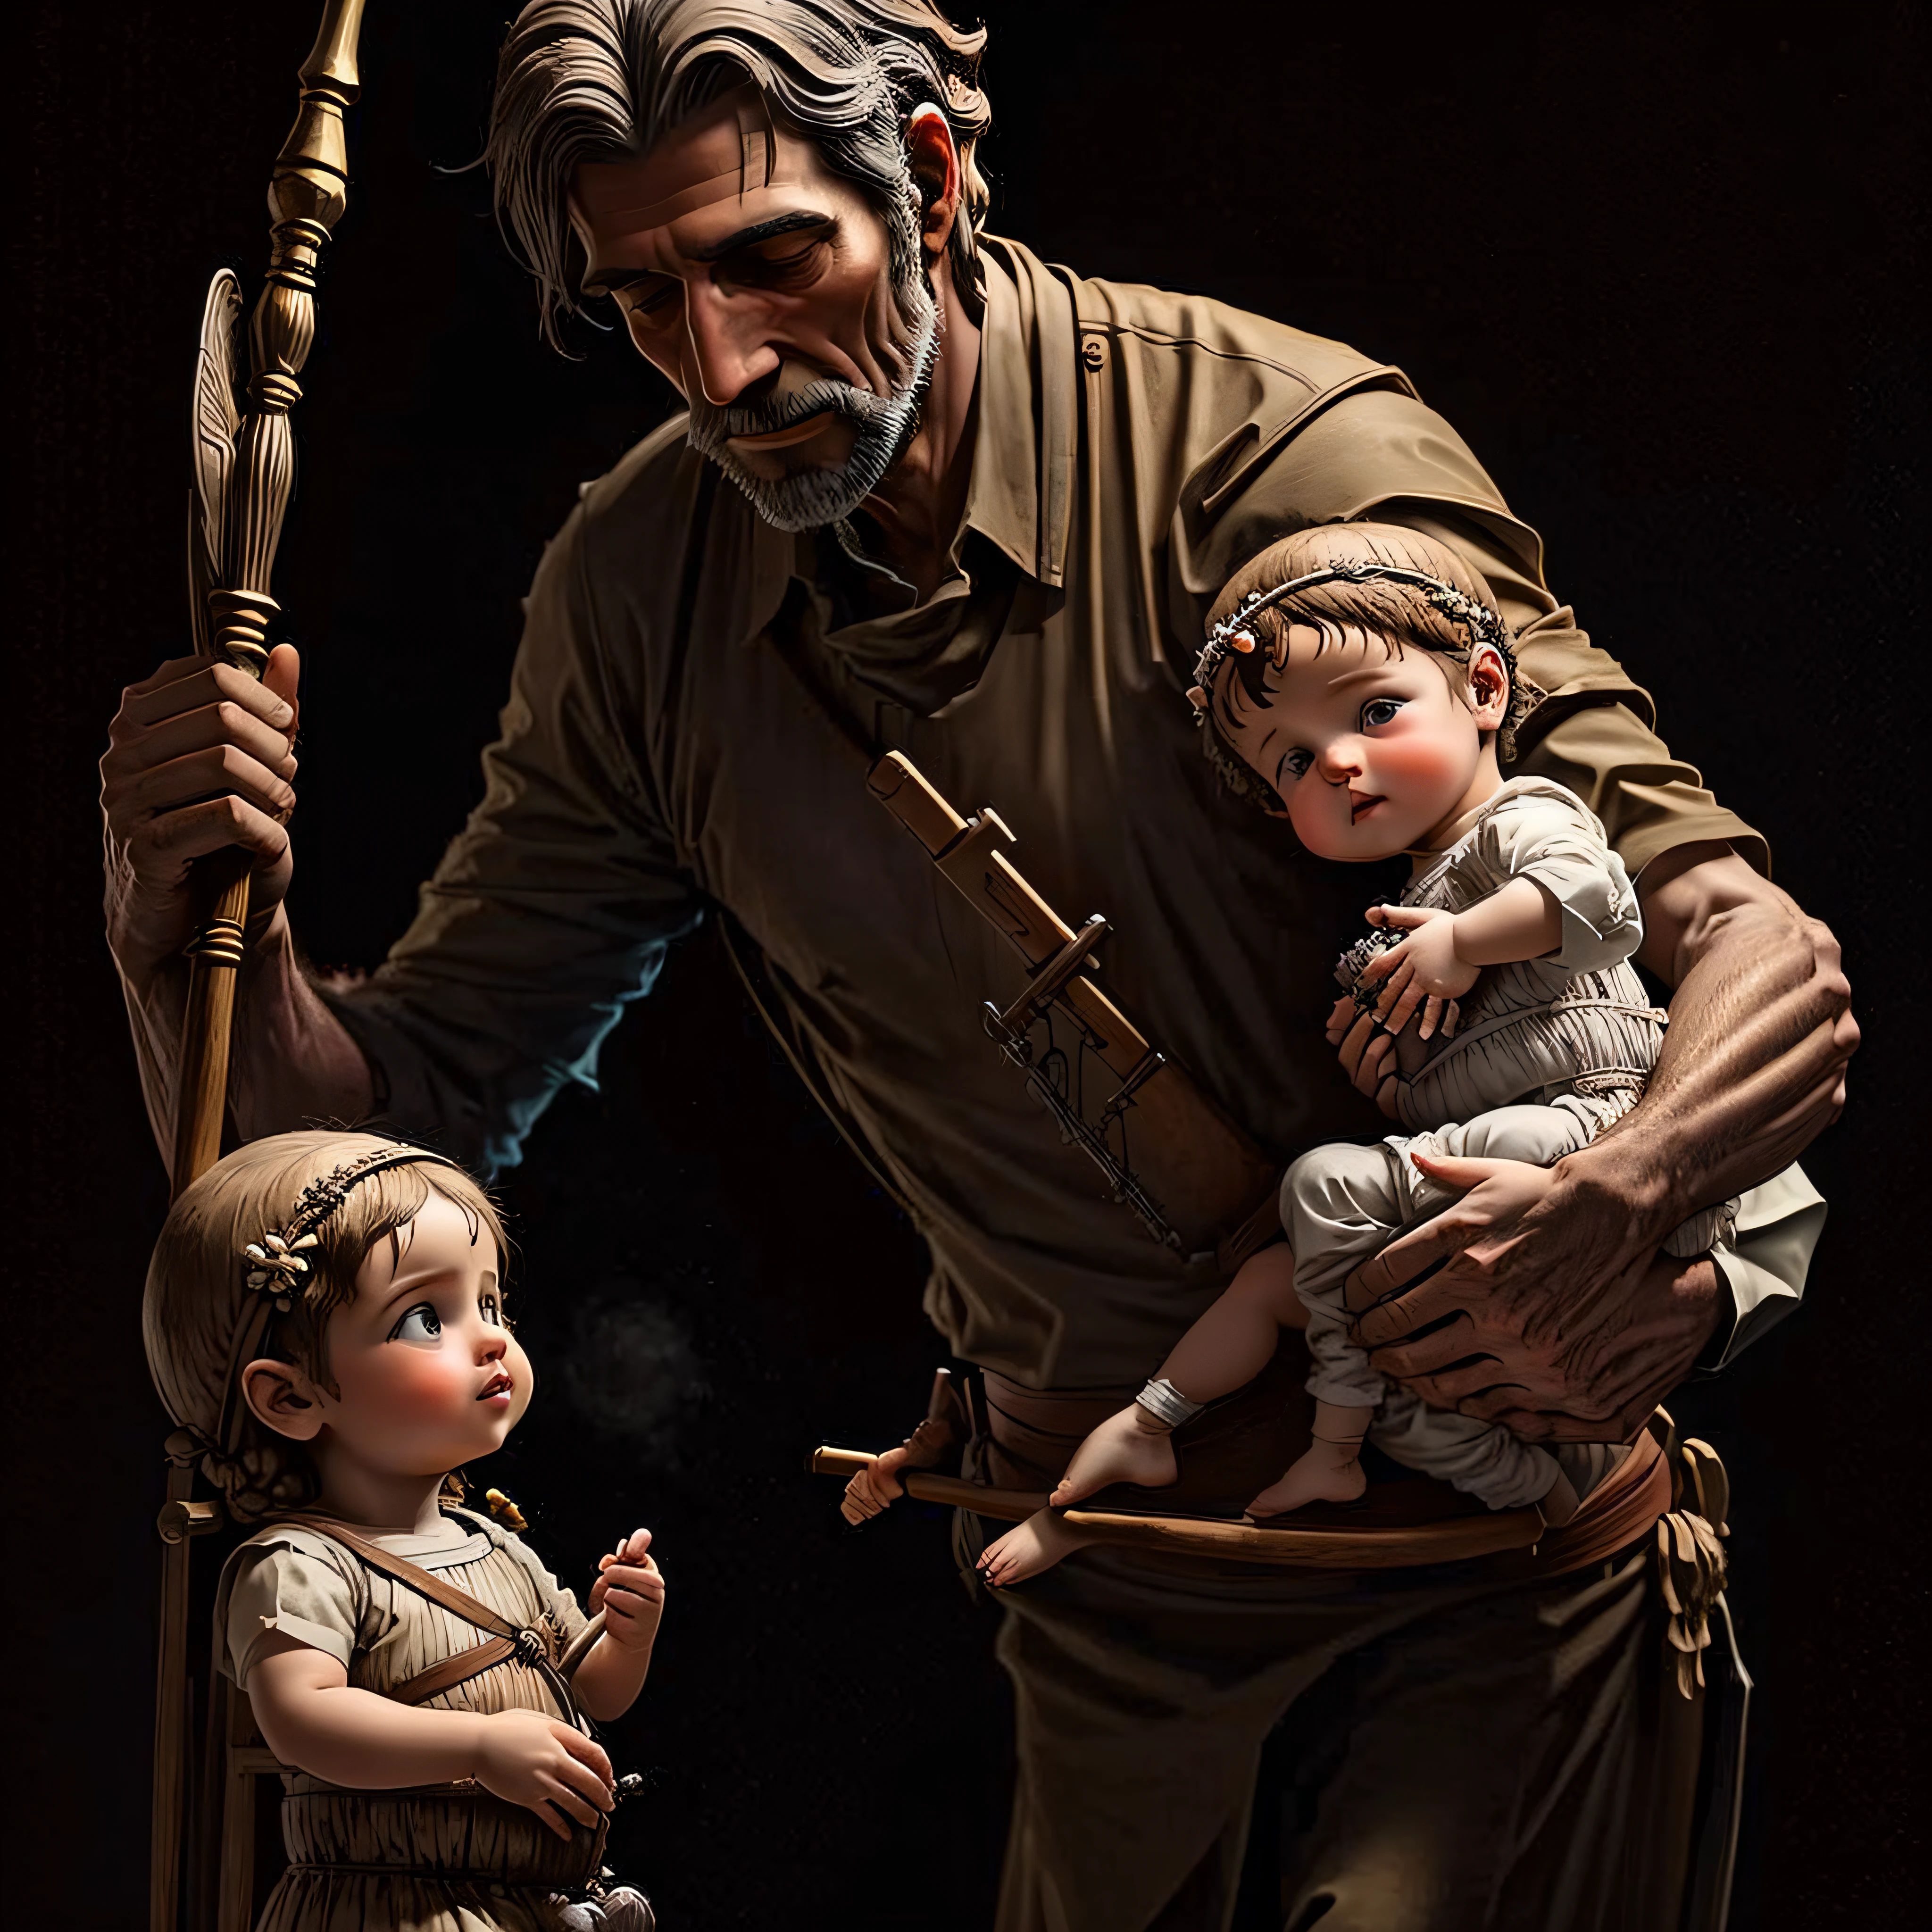 صورة واقعية للقديس يوسف وهو يحمل العصا والطفل يسوع --ار 16:9- تلقائي